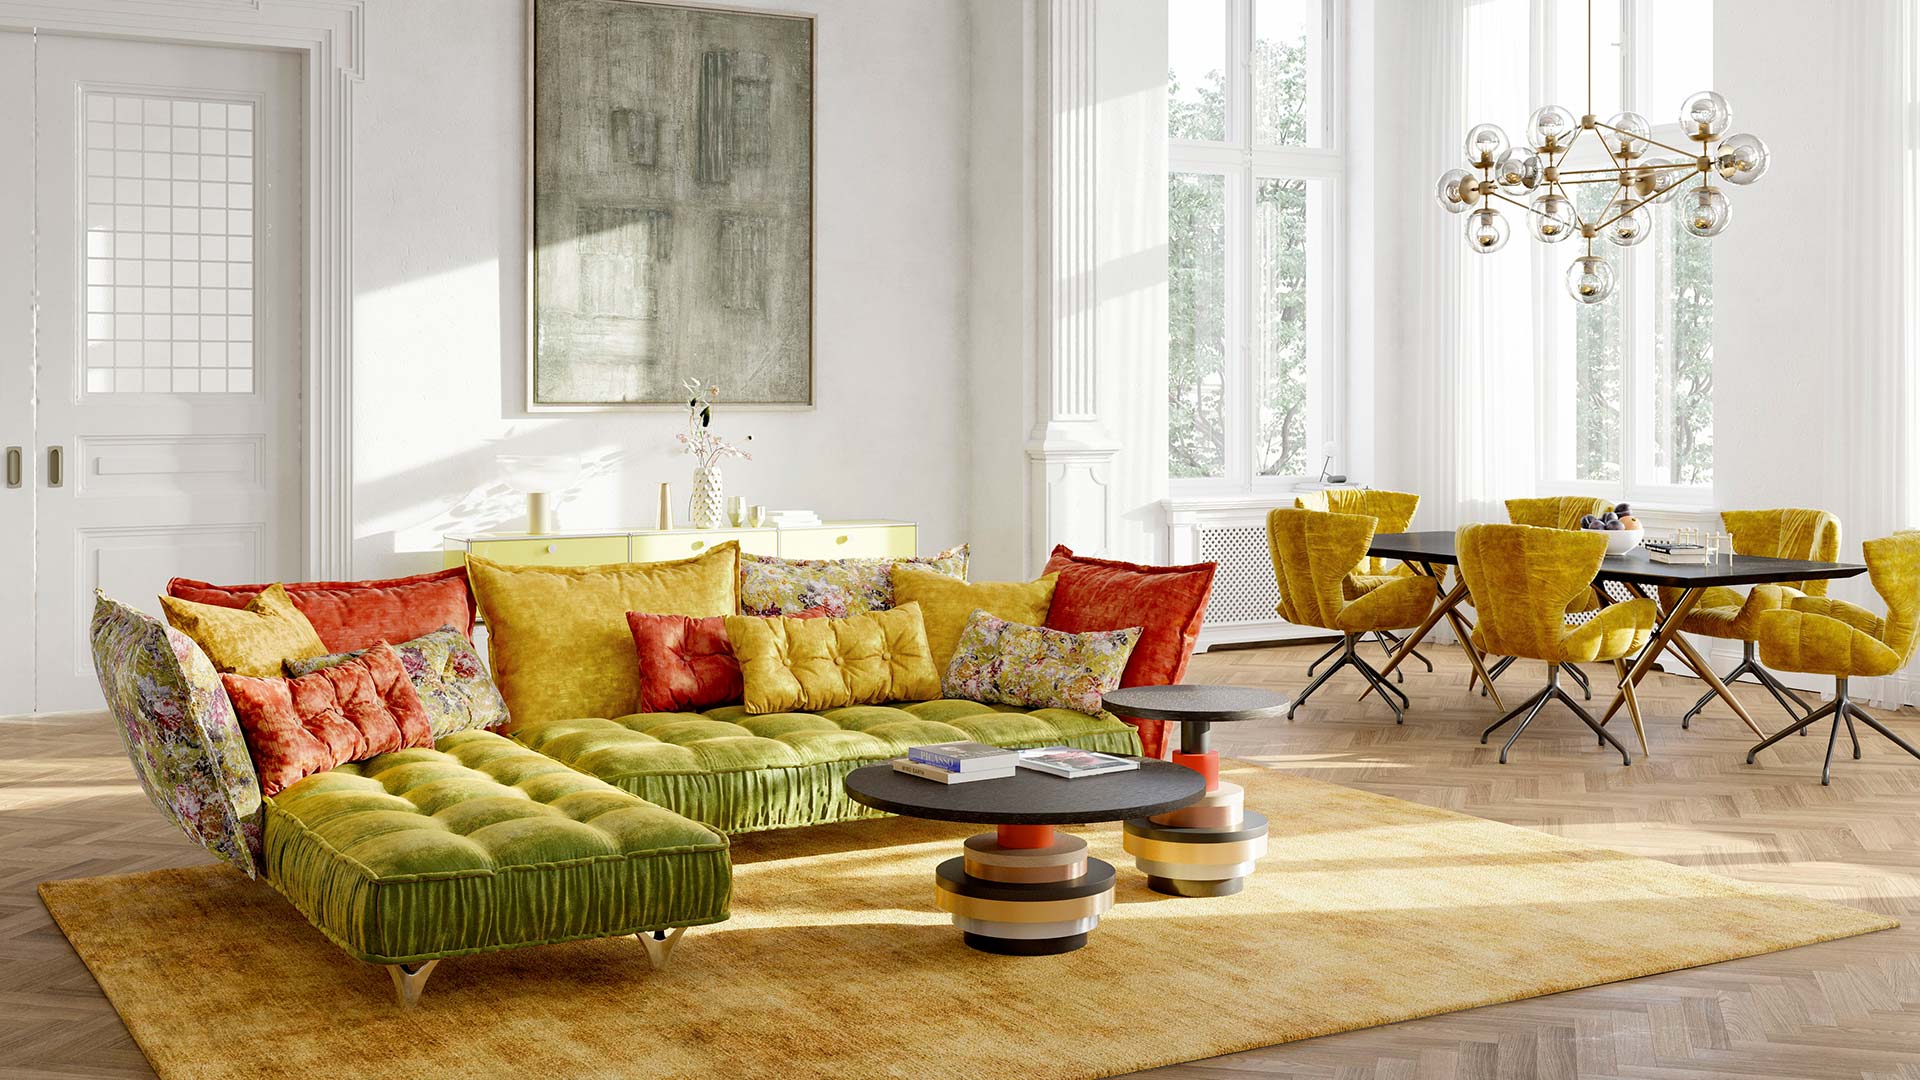 couchgarnitur-couch-sofa-bretz-stoff-velours-gruen-gelb-orange-gemustert-blumen-gerafft-polstergarnitur-fuesse-metall-chrom-tisch-beistelltisch-couchtisch